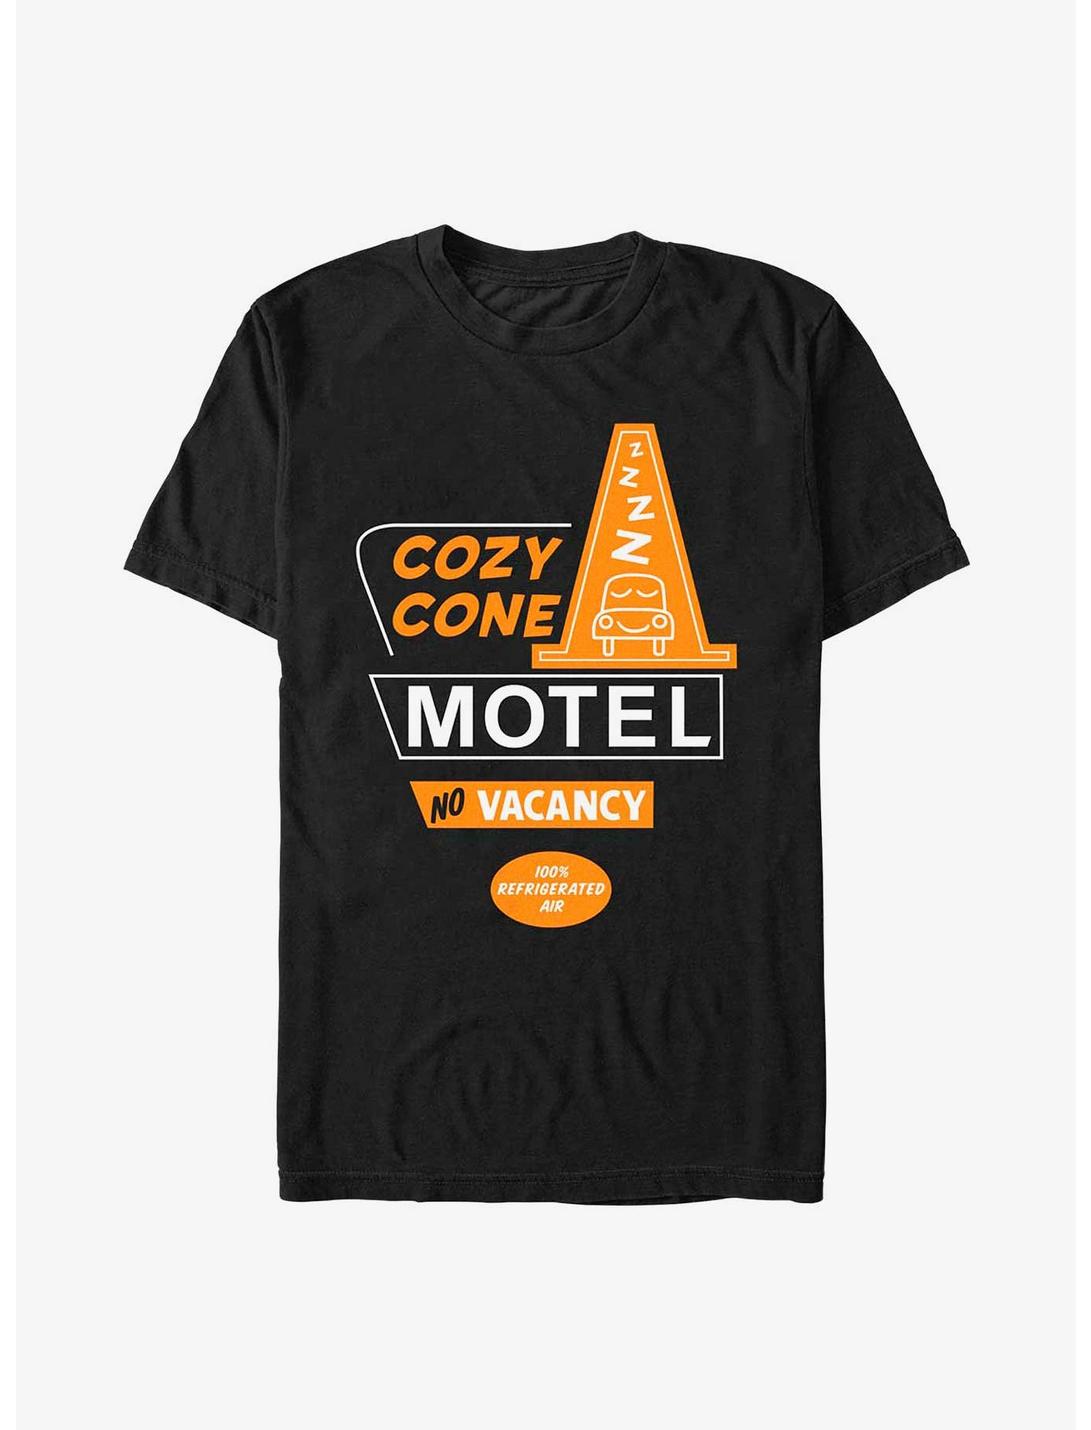 Disney Pixar Cars Cozy Cone Motel T-Shirt, BLACK, hi-res